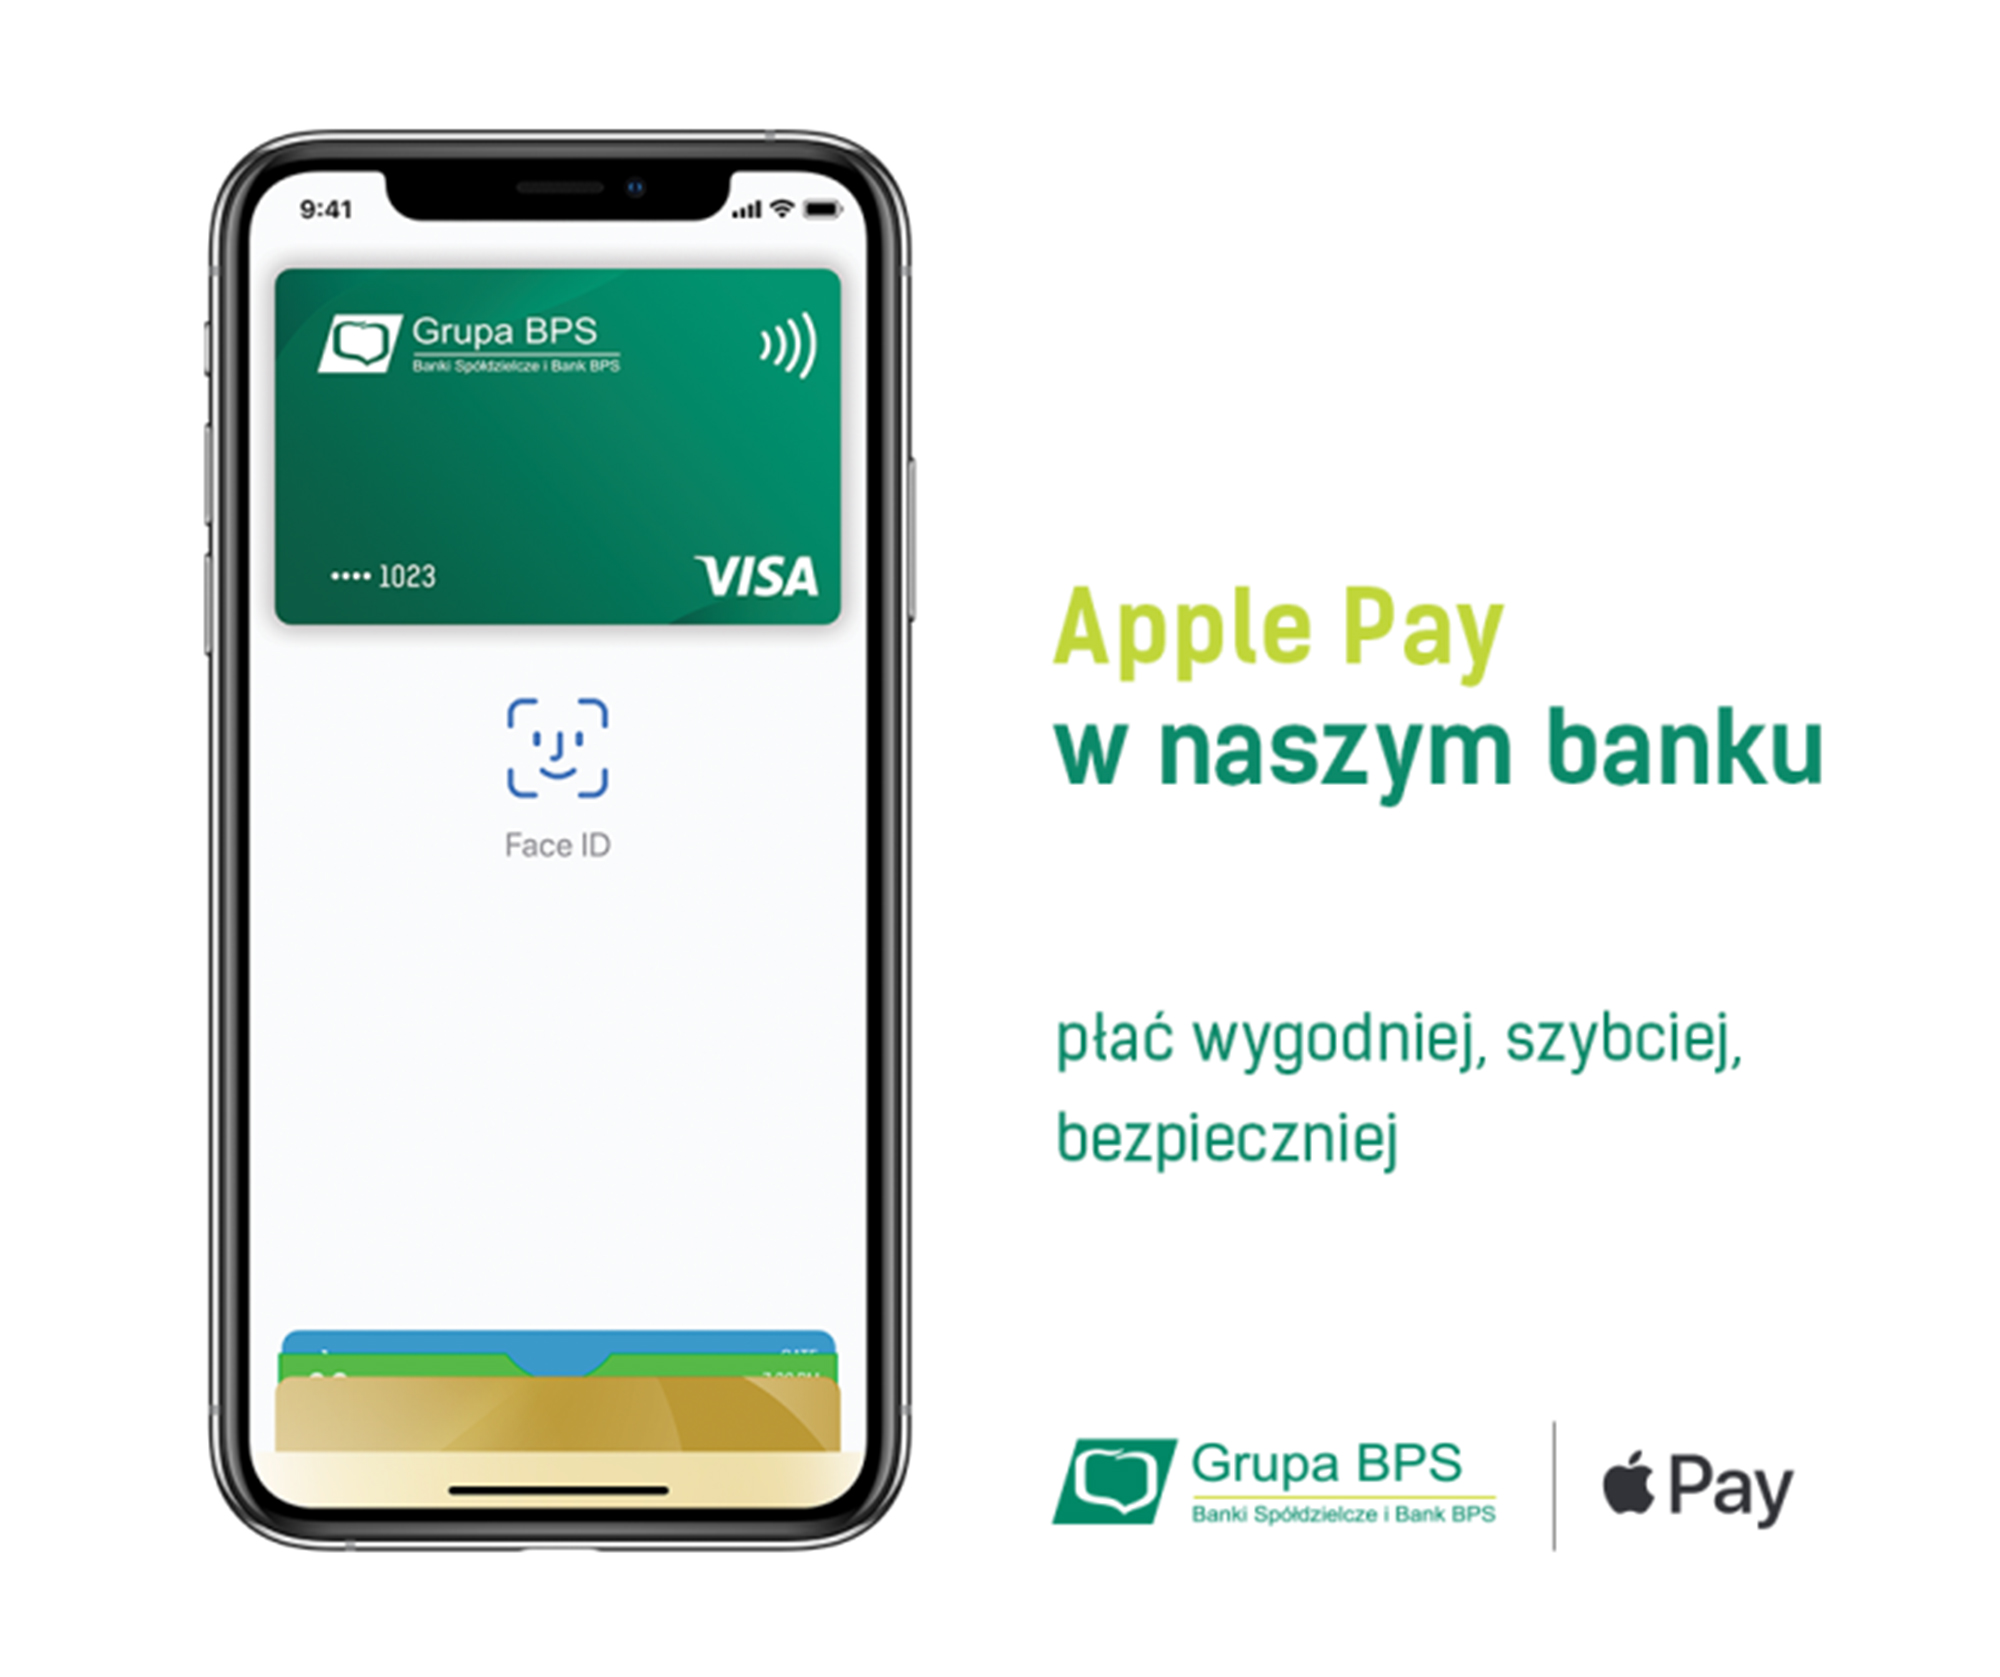 Apple Pay - płać wygodniej, szybciej, bezpieczniej